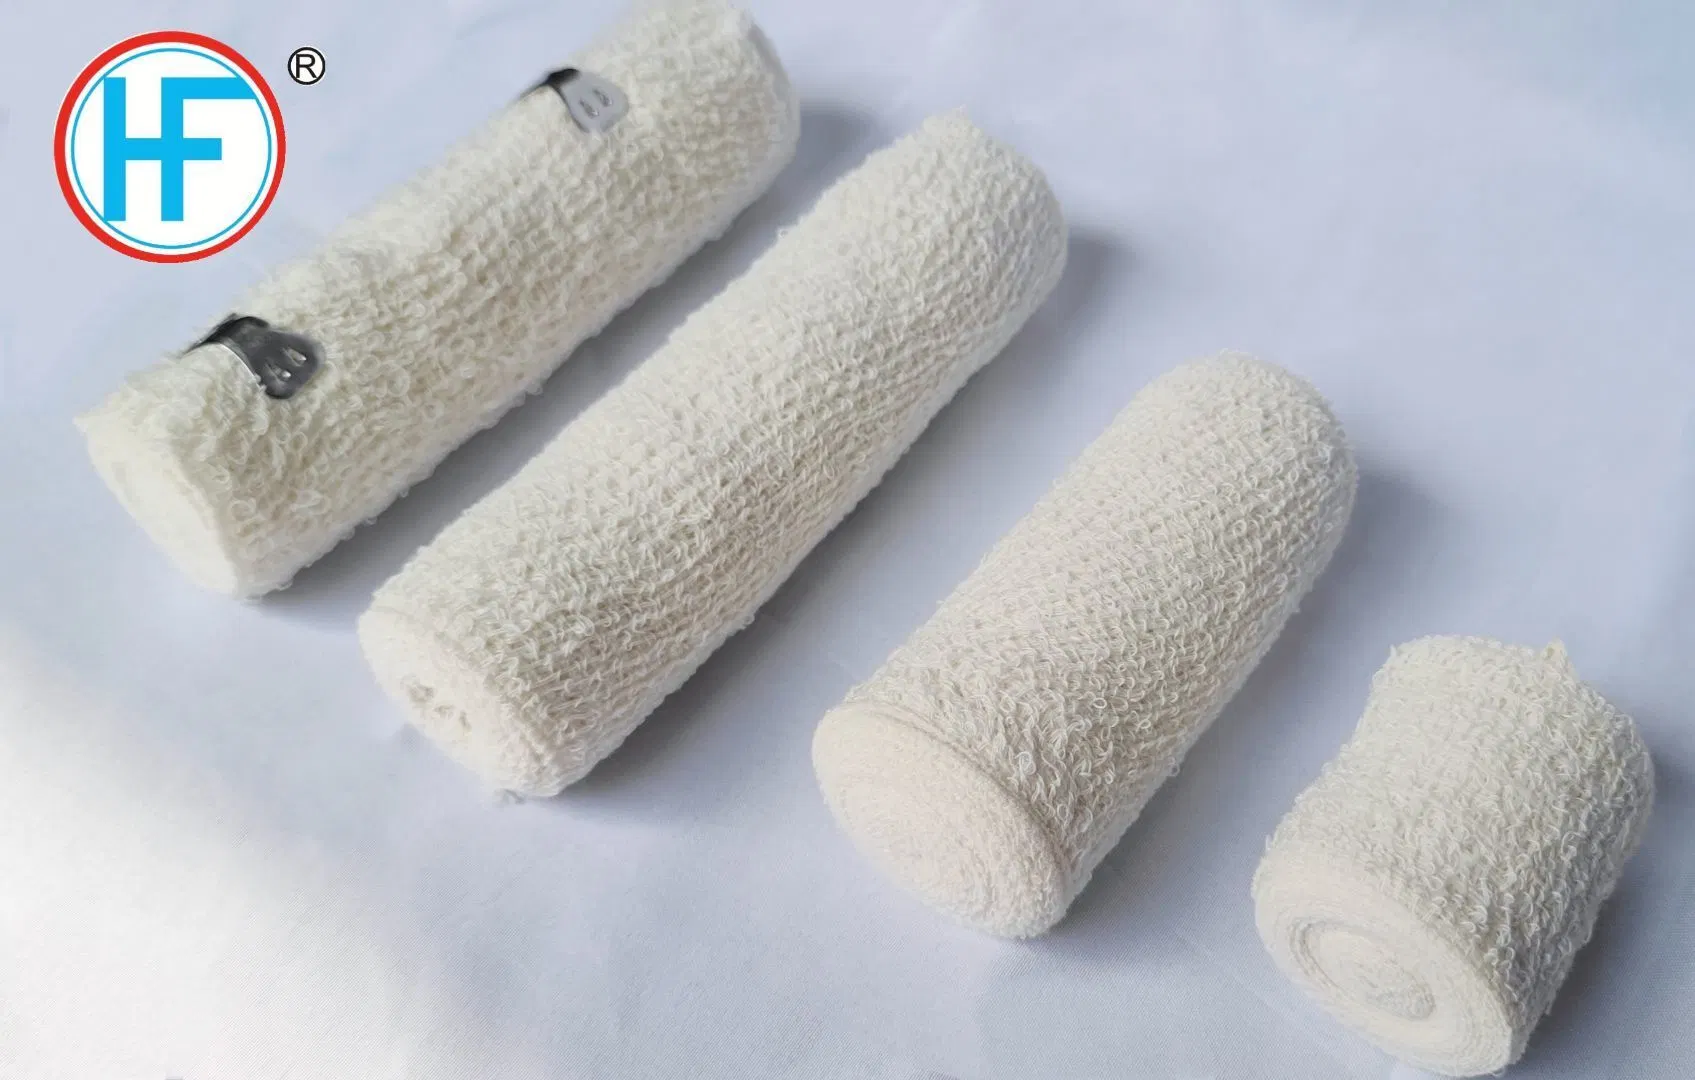 Krankenhaus Versorgung Einweg-Baumwolle Spandex Natürliche Elastische Krepp-Verband